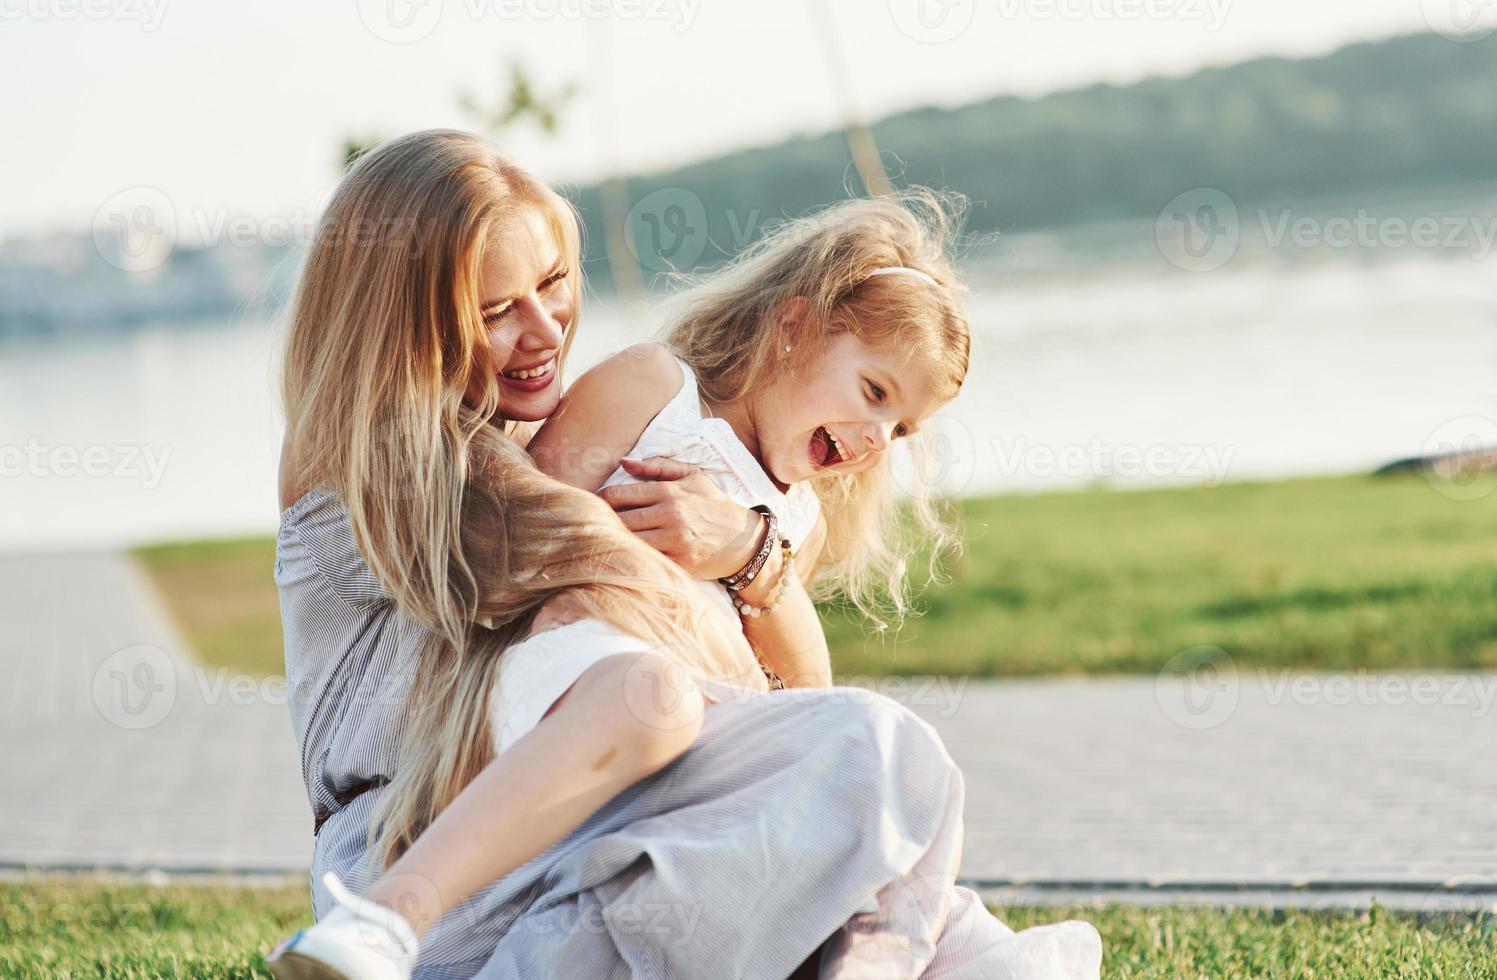 amore puro. foto della giovane madre e sua figlia che si divertono sull'erba verde con il lago sullo sfondo